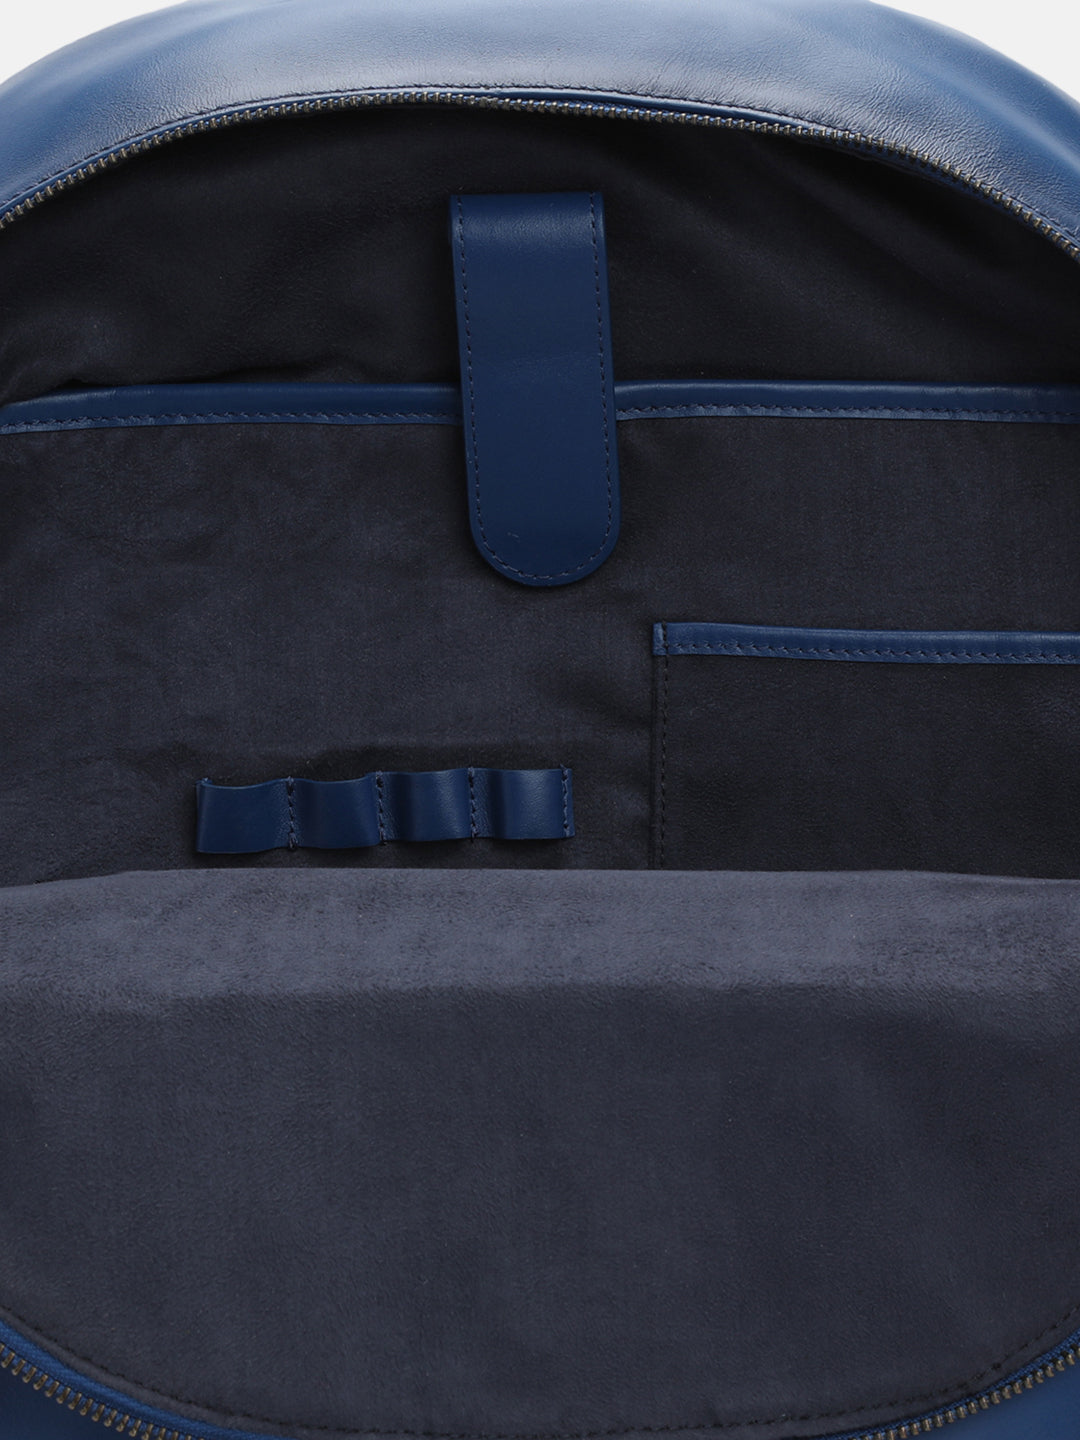 BAGATT Solofra Light blue Leather Bagpack